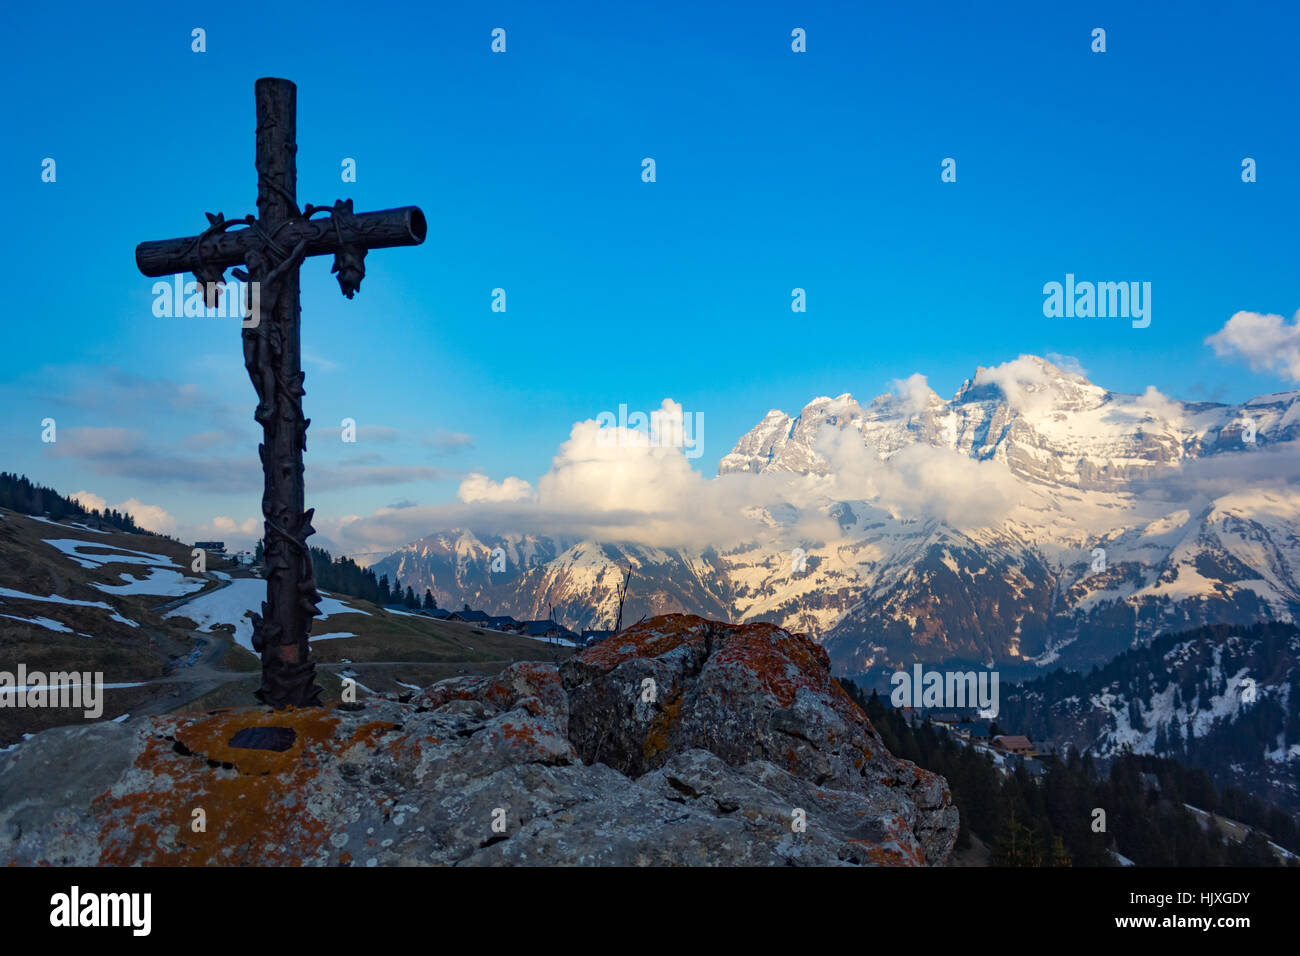 Cruz religiosas sobre una roca con vistas de montañas nevadas Foto de stock